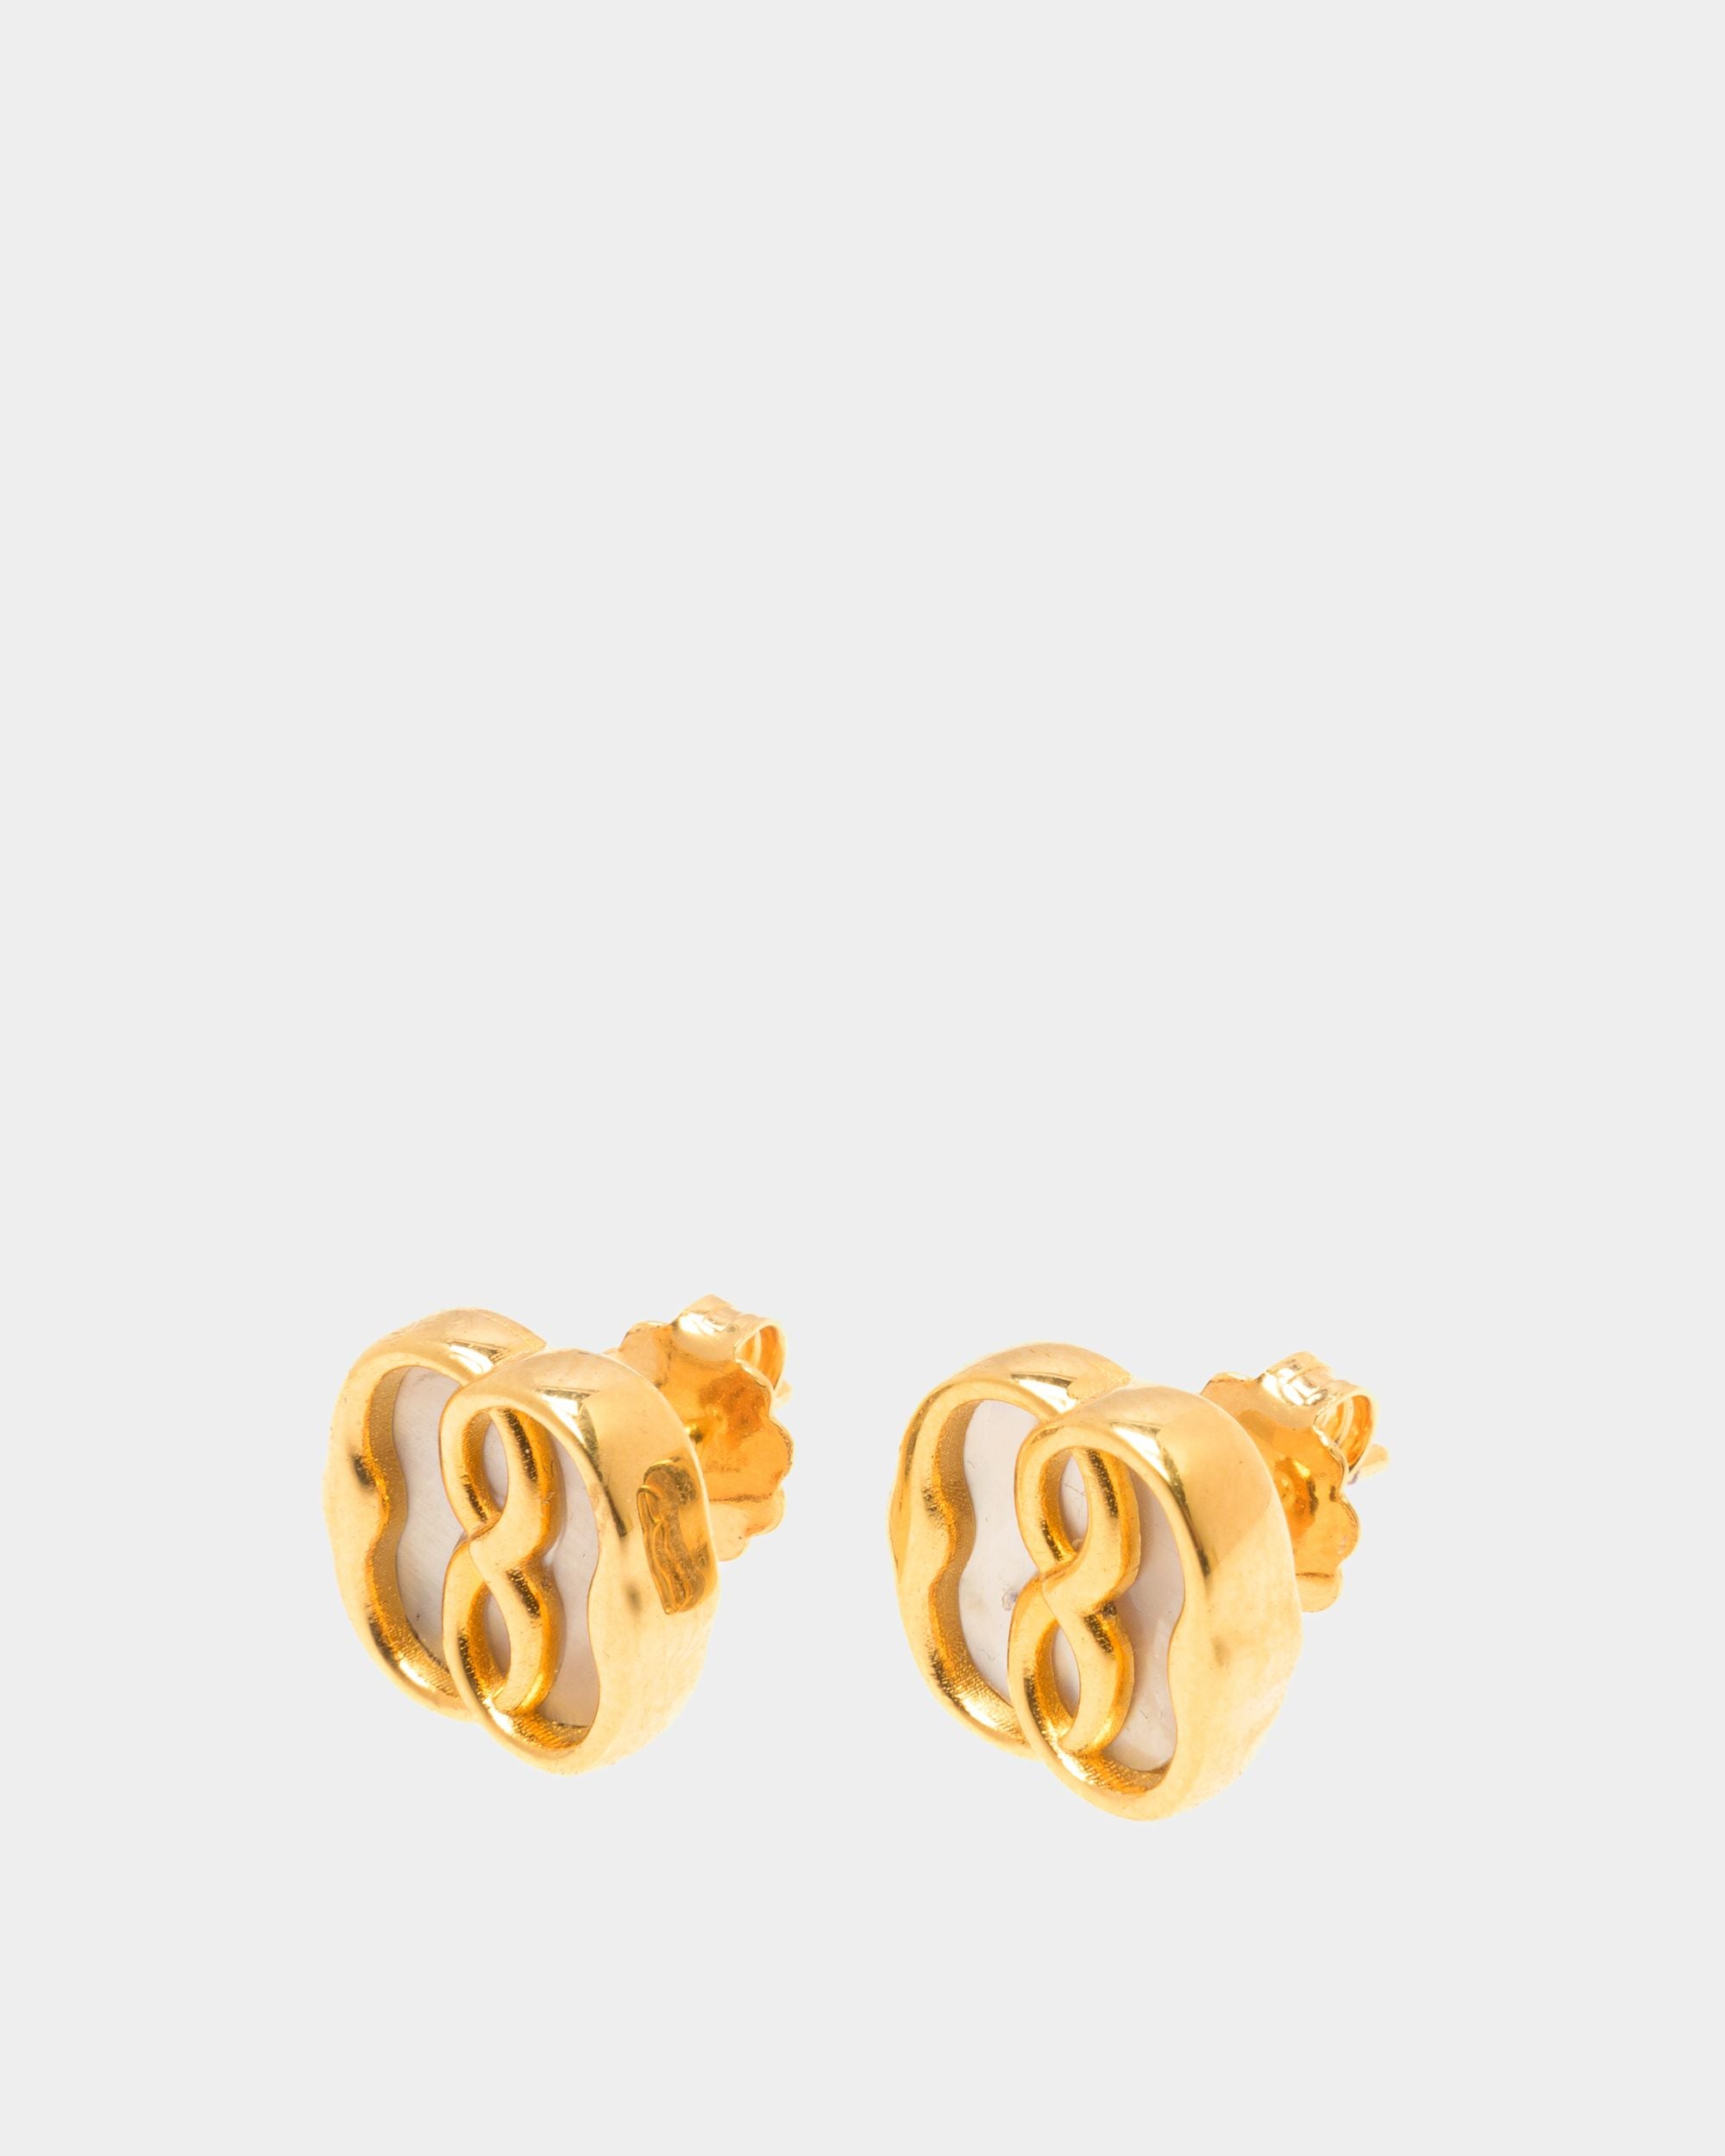 Emblem | Boucles d'oreilles pour femme en éco-laiton doré et nacre | Bally | Still Life Devant